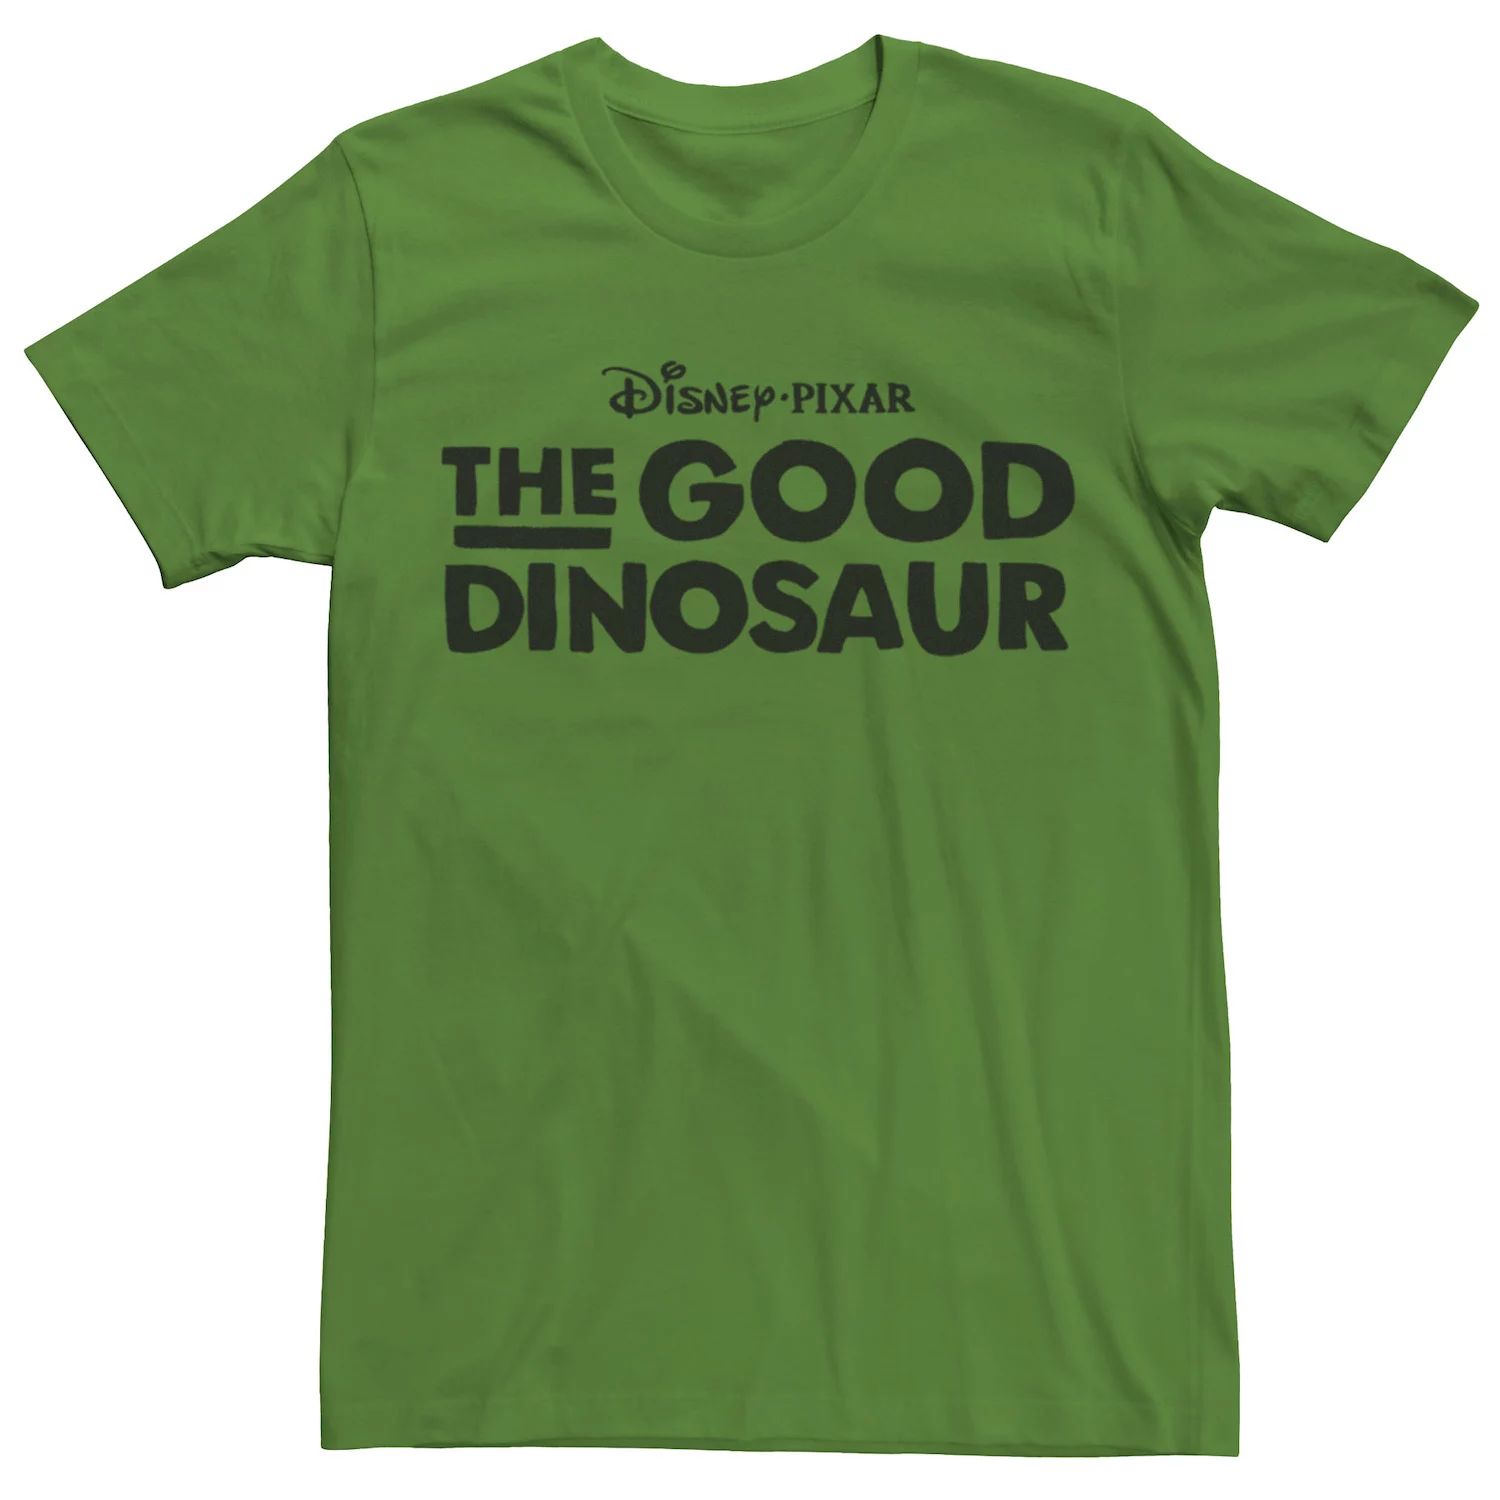 Мужская футболка с логотипом фильма «Хороший динозавр» Disney / Pixar мужская футболка с логотипом фильма хороший динозавр disney pixar